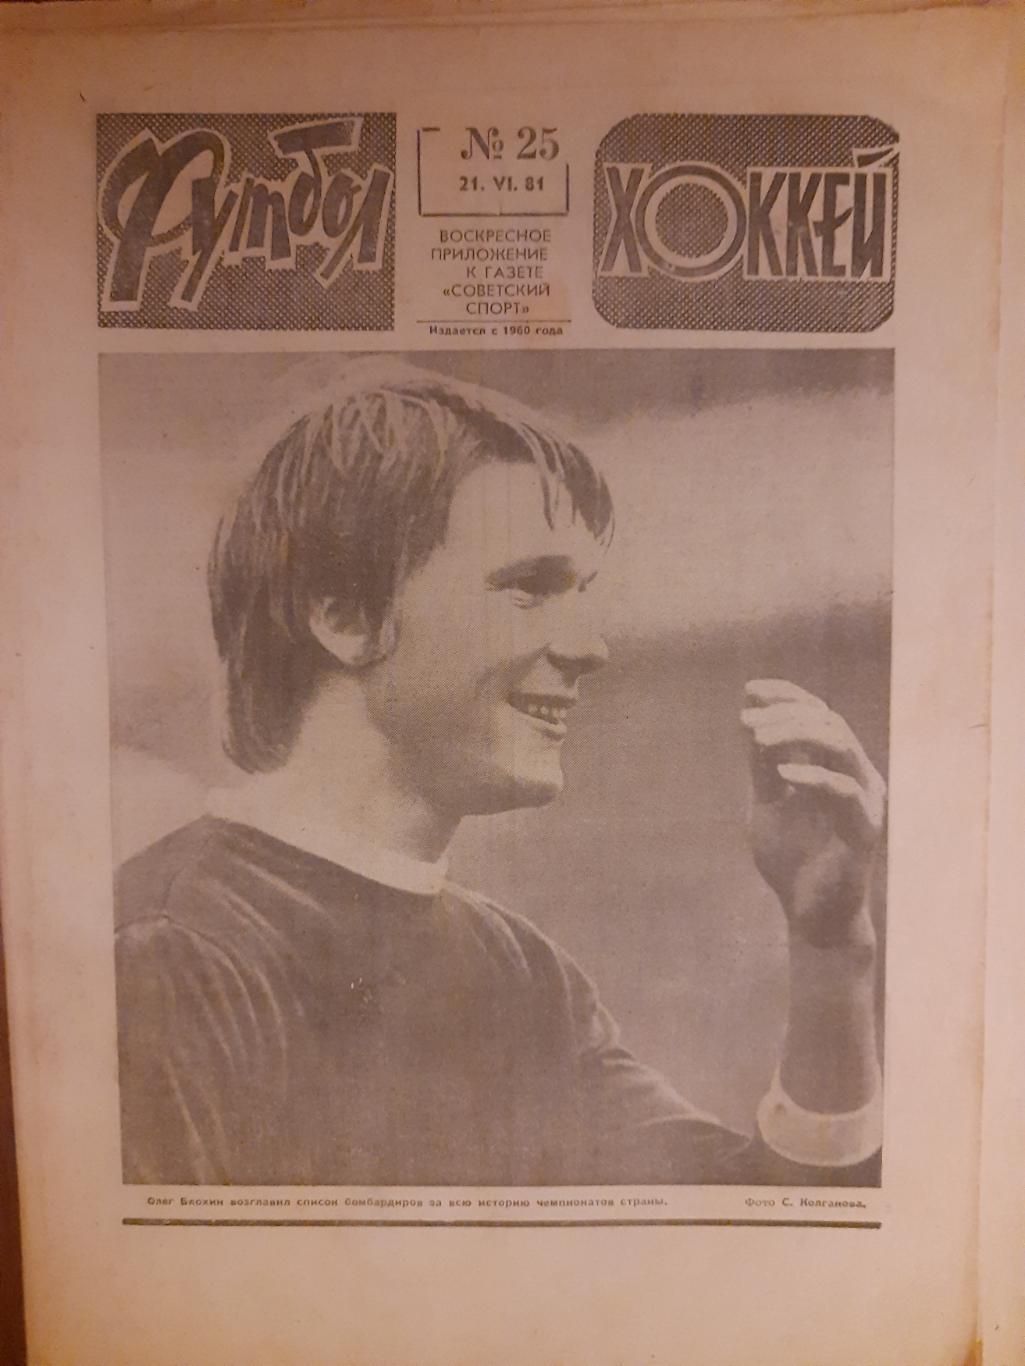 еженедельник футбол-хоккей #25 ,1981